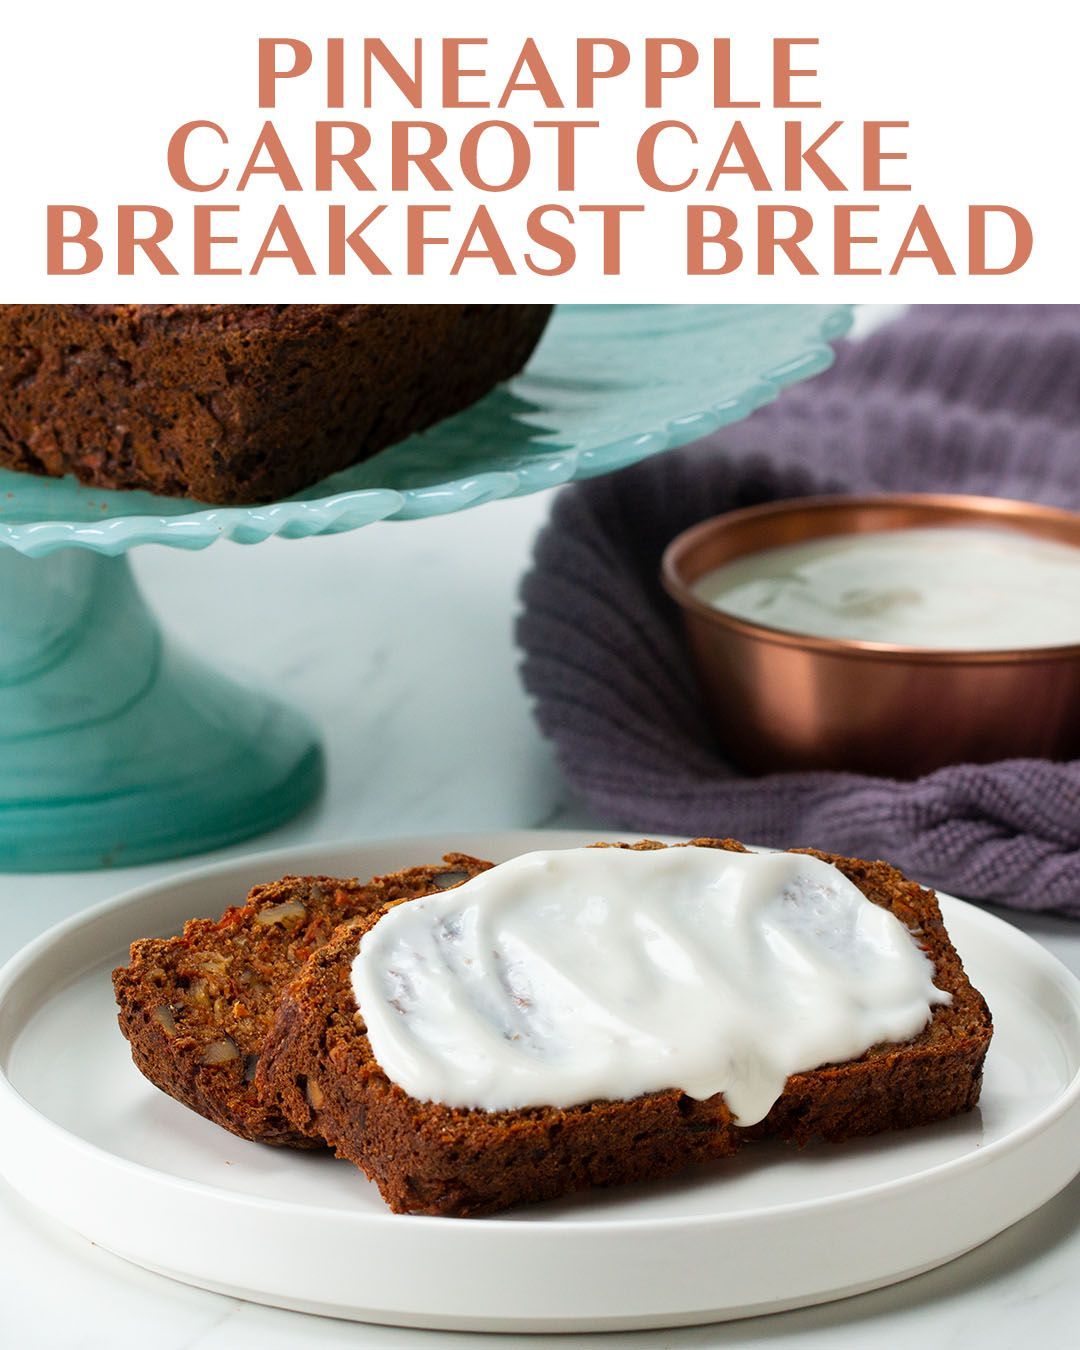 Pineapple Carrot Cake Breakfast Bread Recipe by Tasty -   19 cake Carrot breakfast ideas